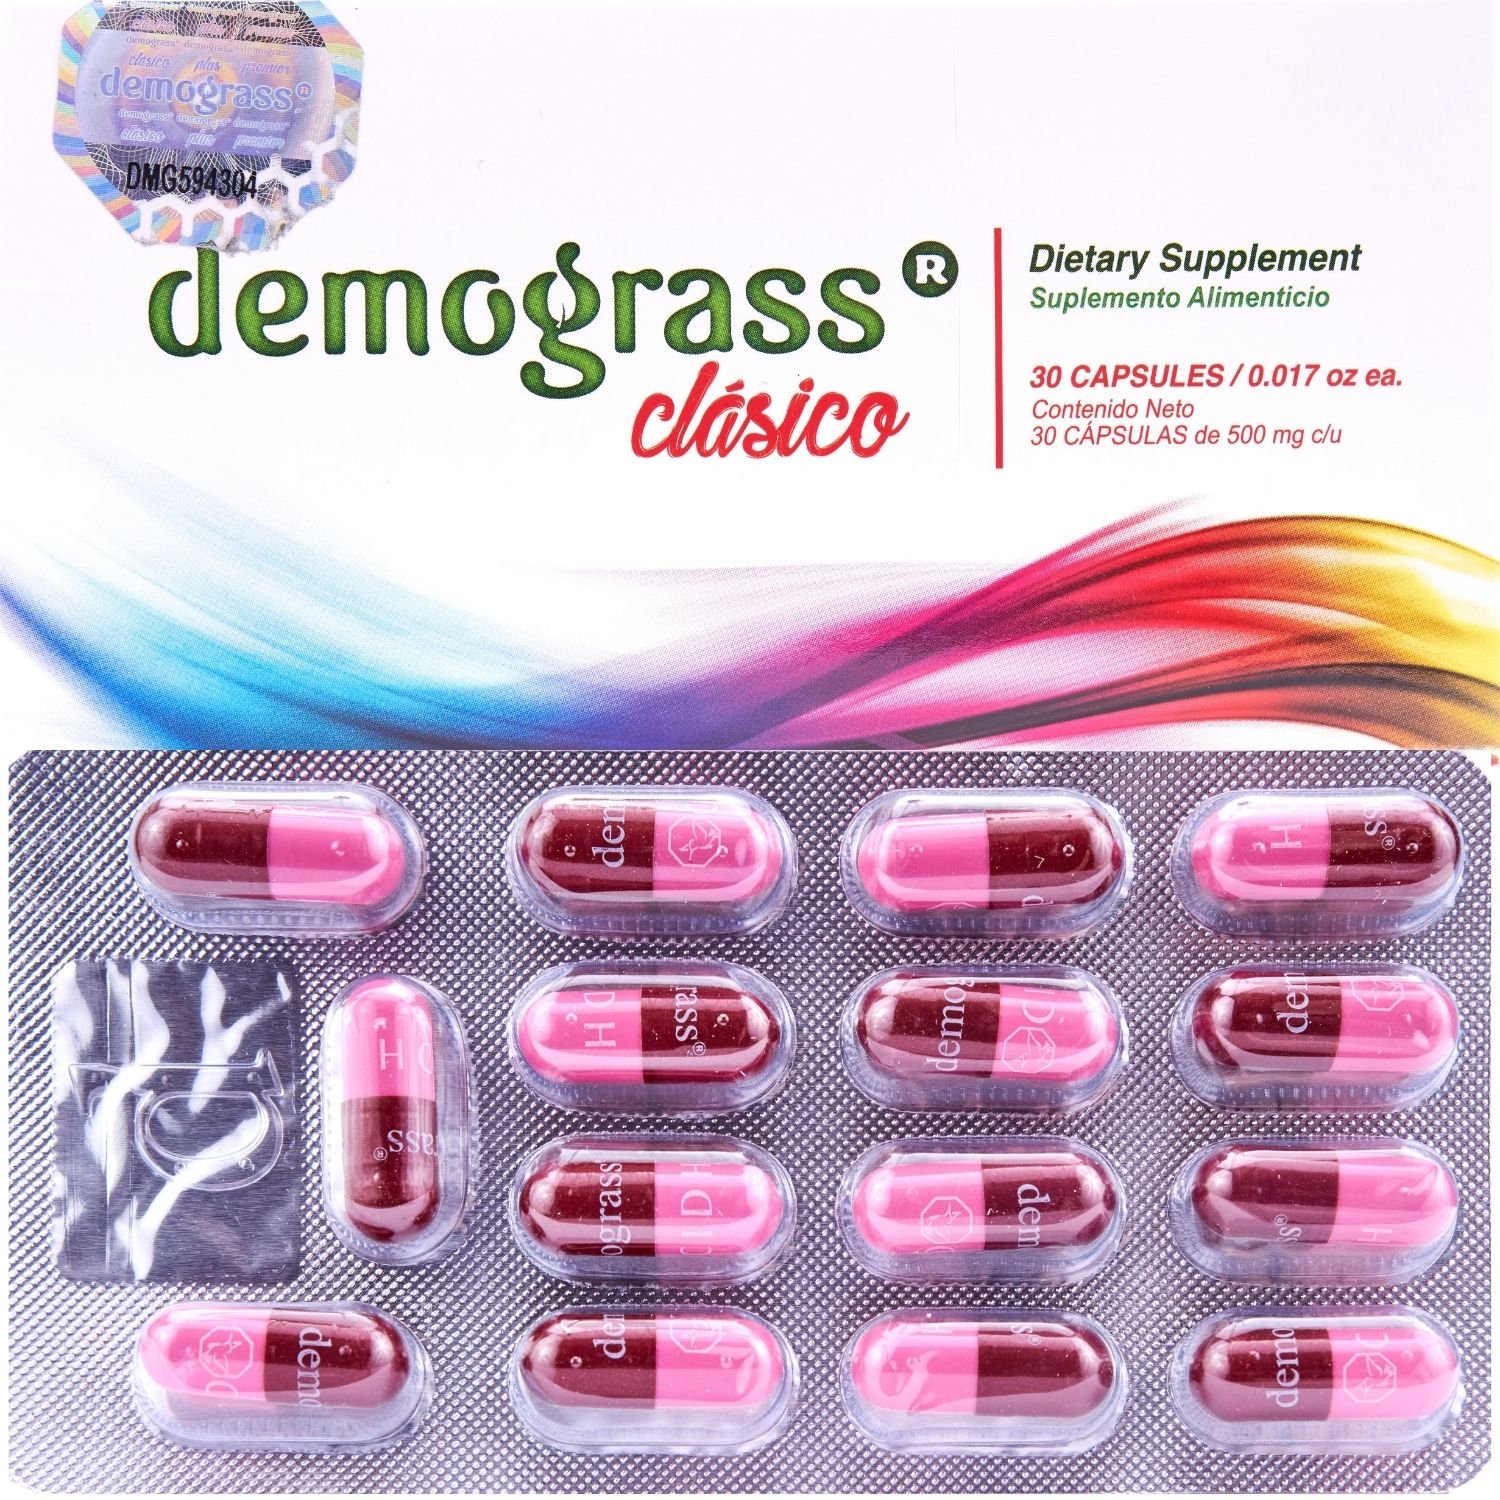 Demograss Classic Box + Pills.jpg